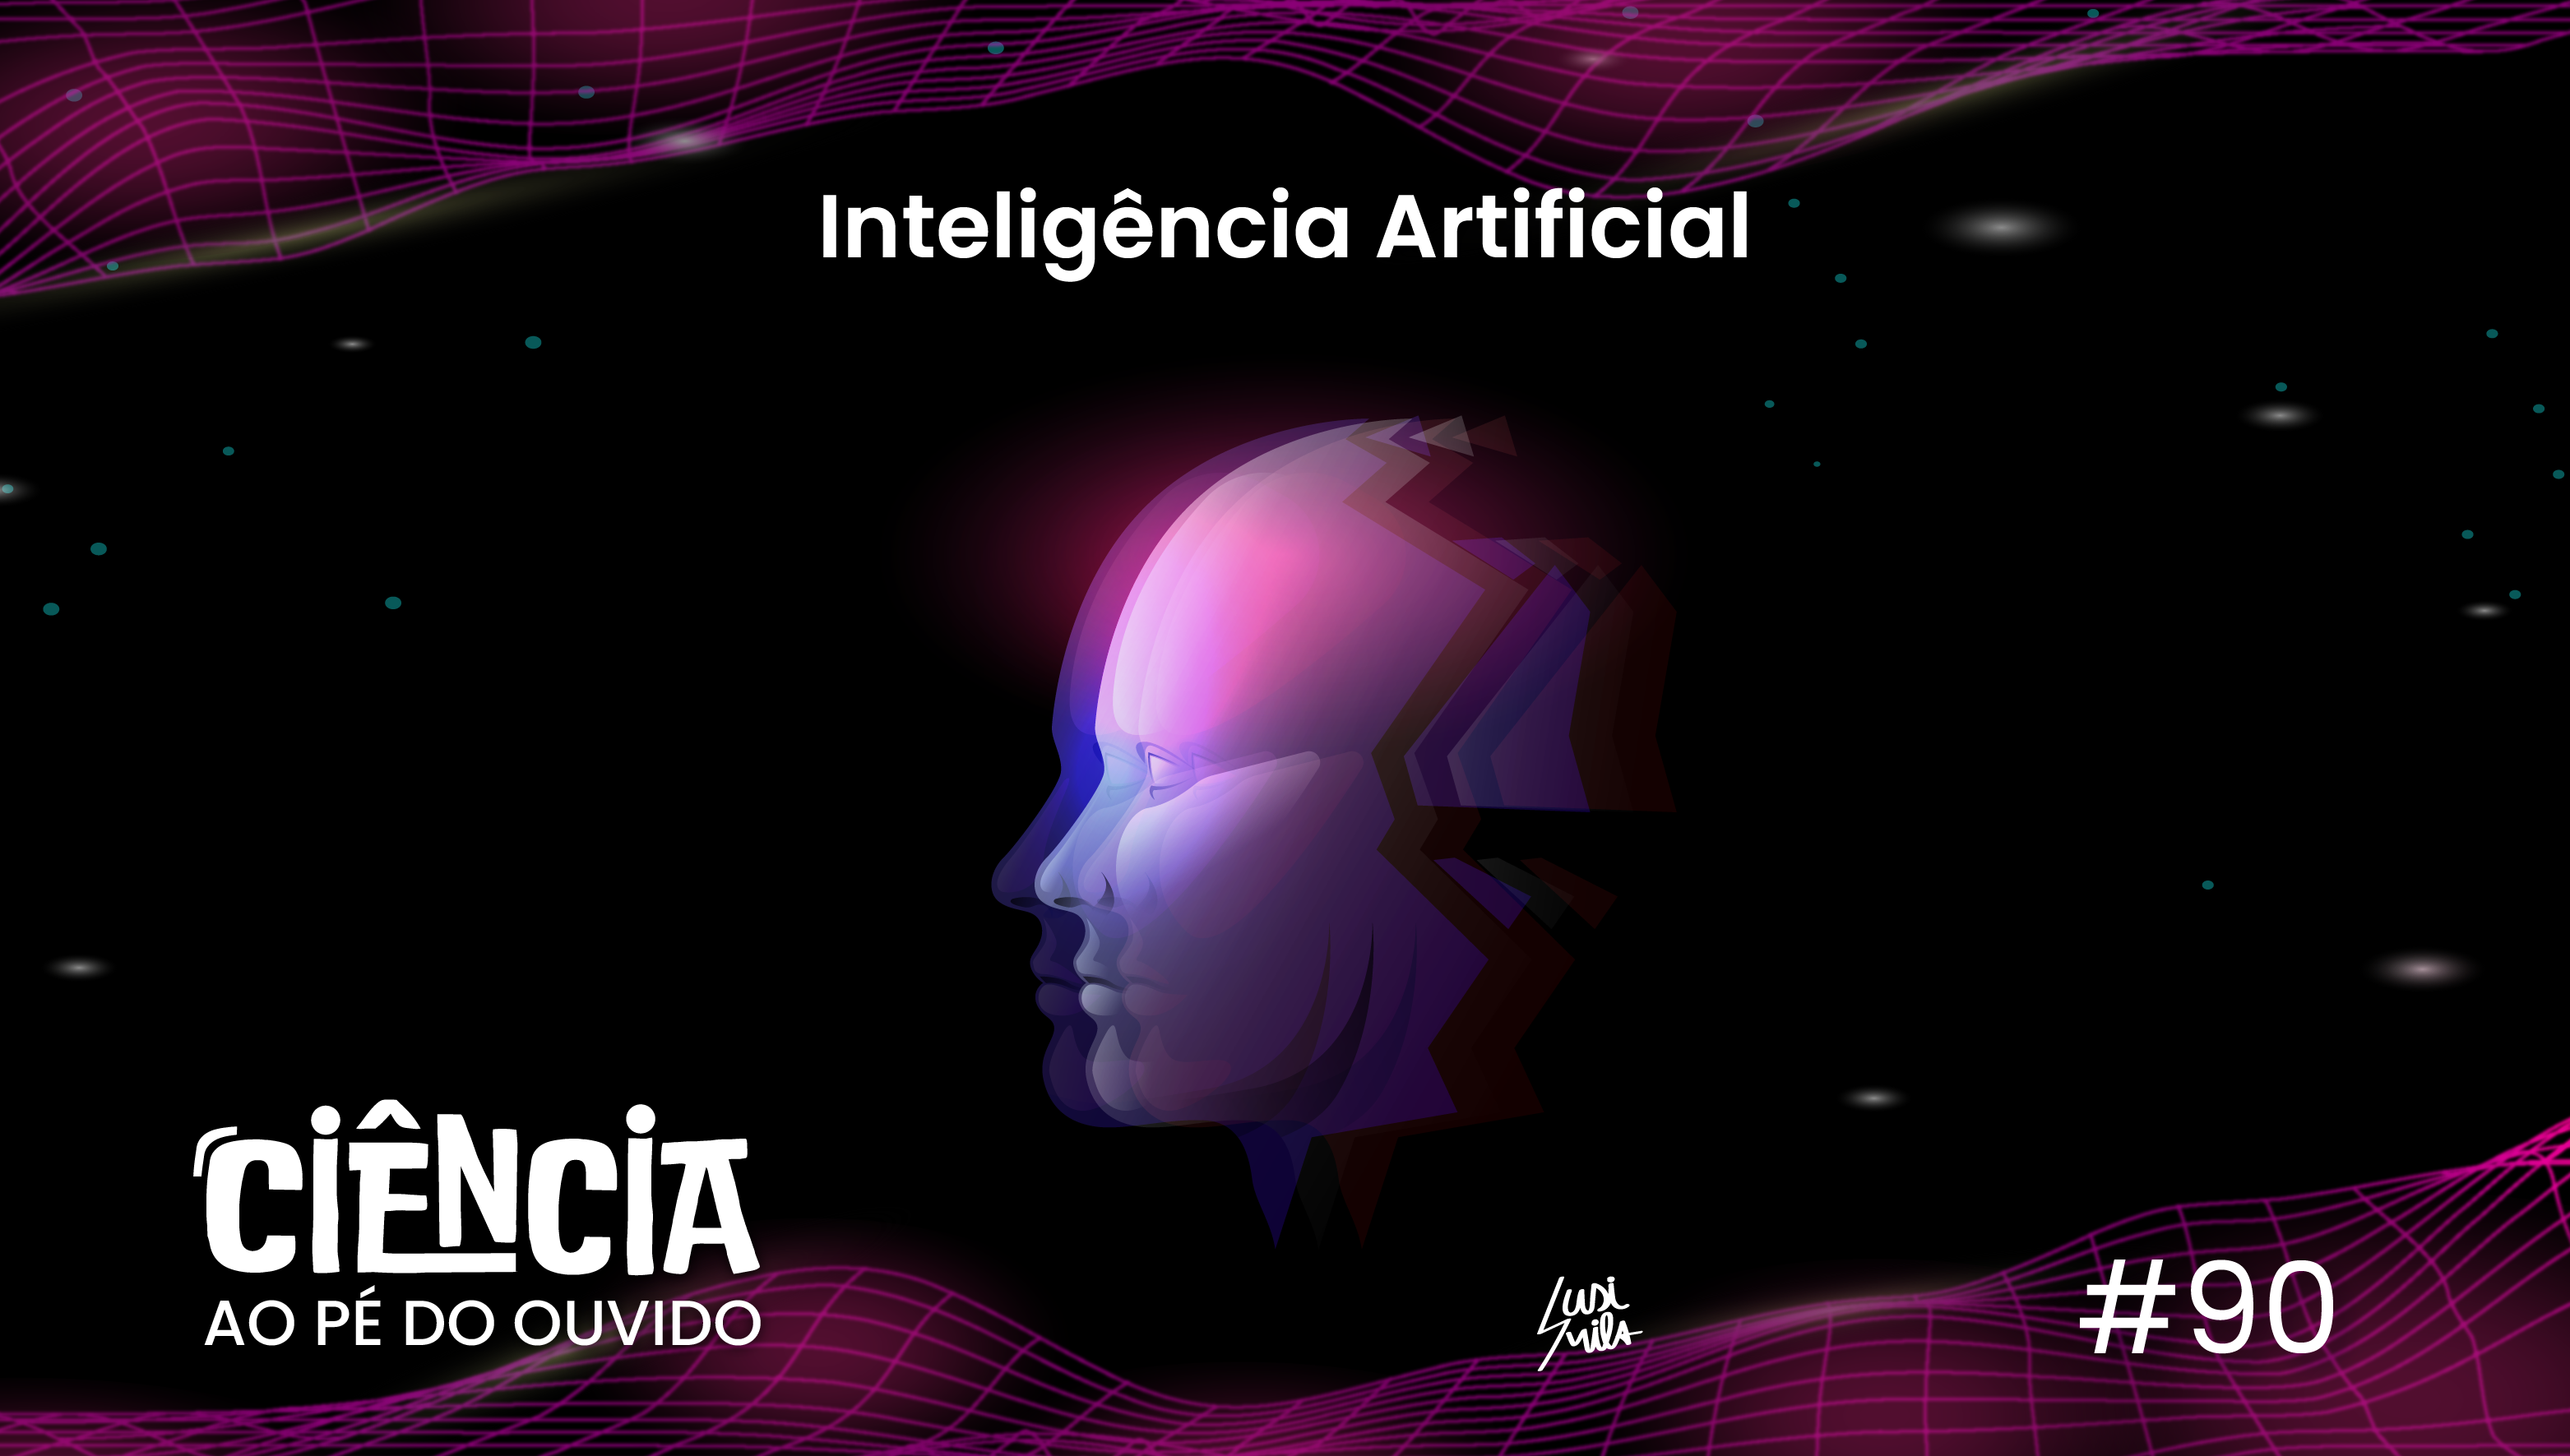 Capa do episódio 90 do podcast Ciência ao Pé do Ouvido com referência a inteligência artificial.